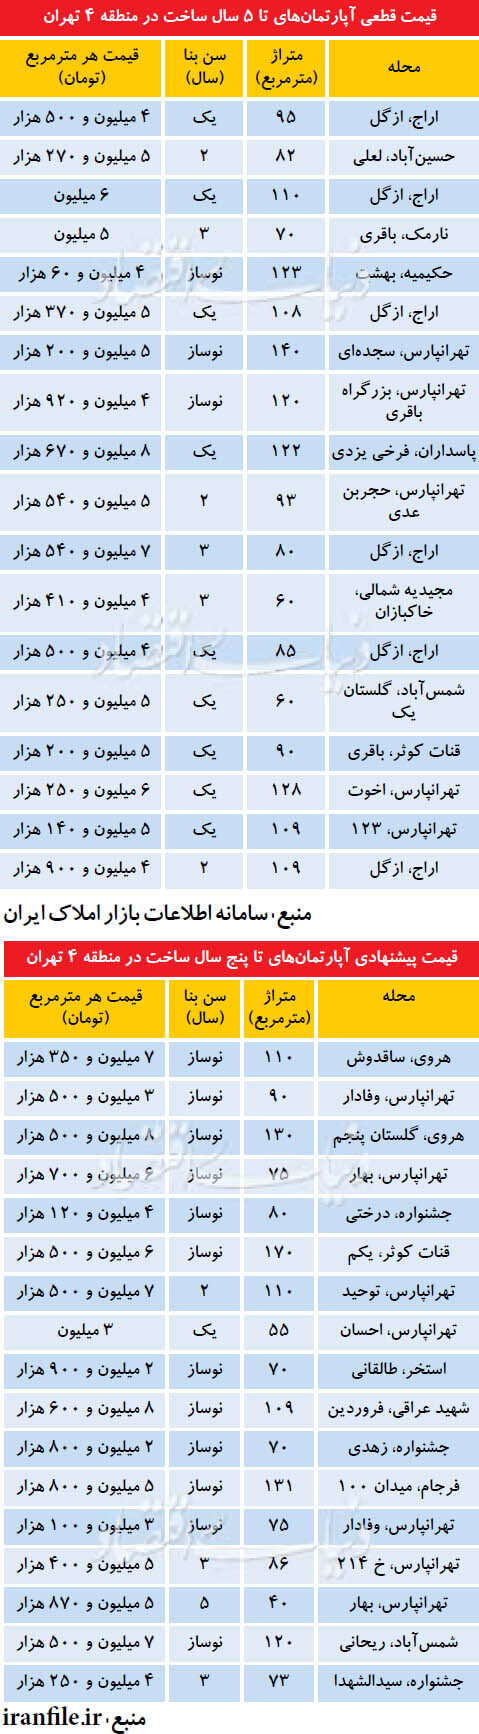 اخبار اقتصادی,خبرهای اقتصادی,مسکن و عمران,قیمت آپارتمان در تهران